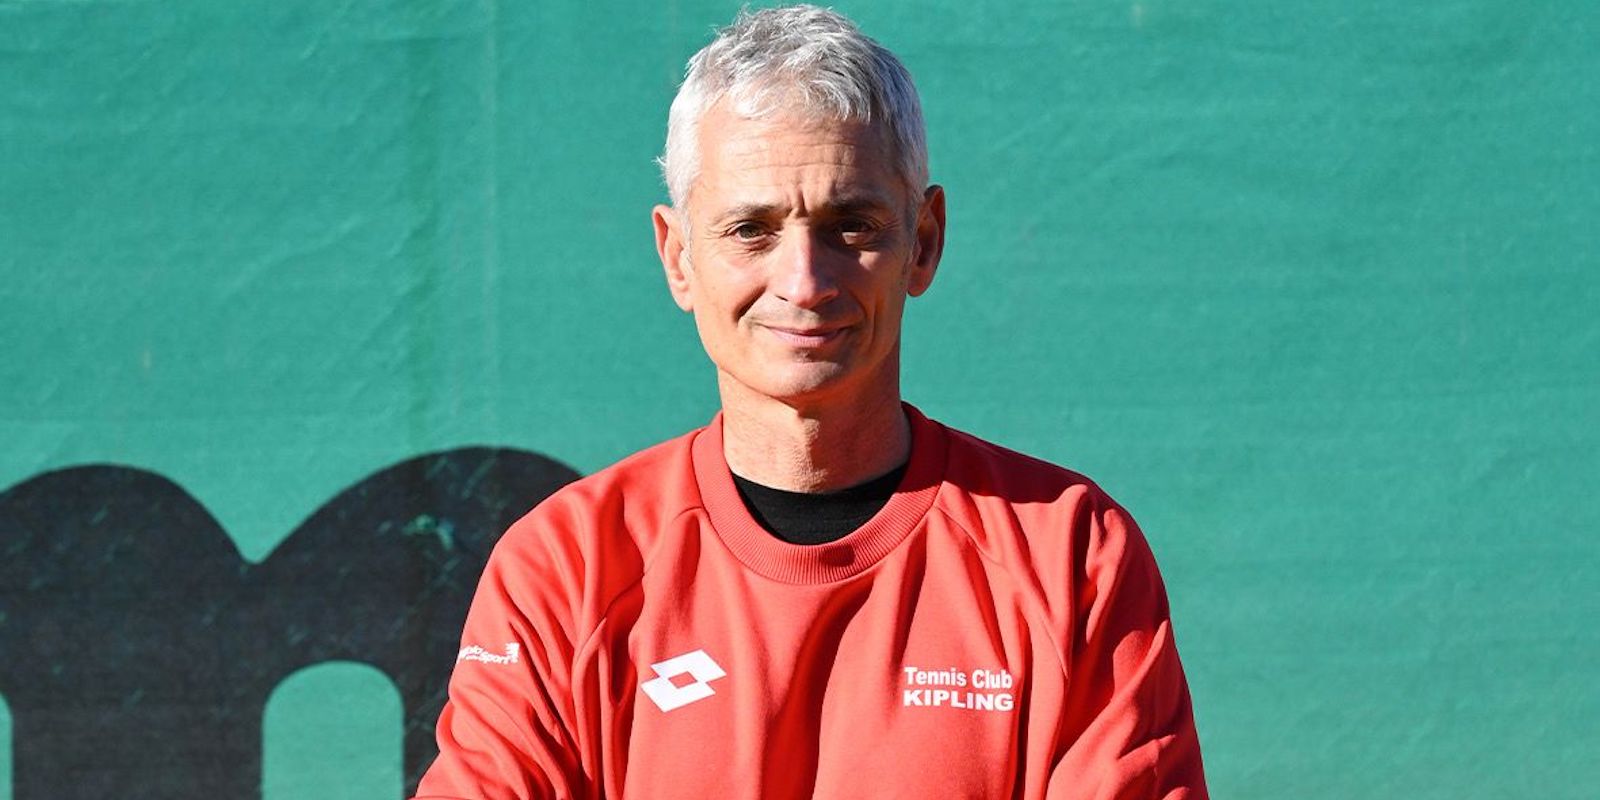 Aldo Pontecorvo